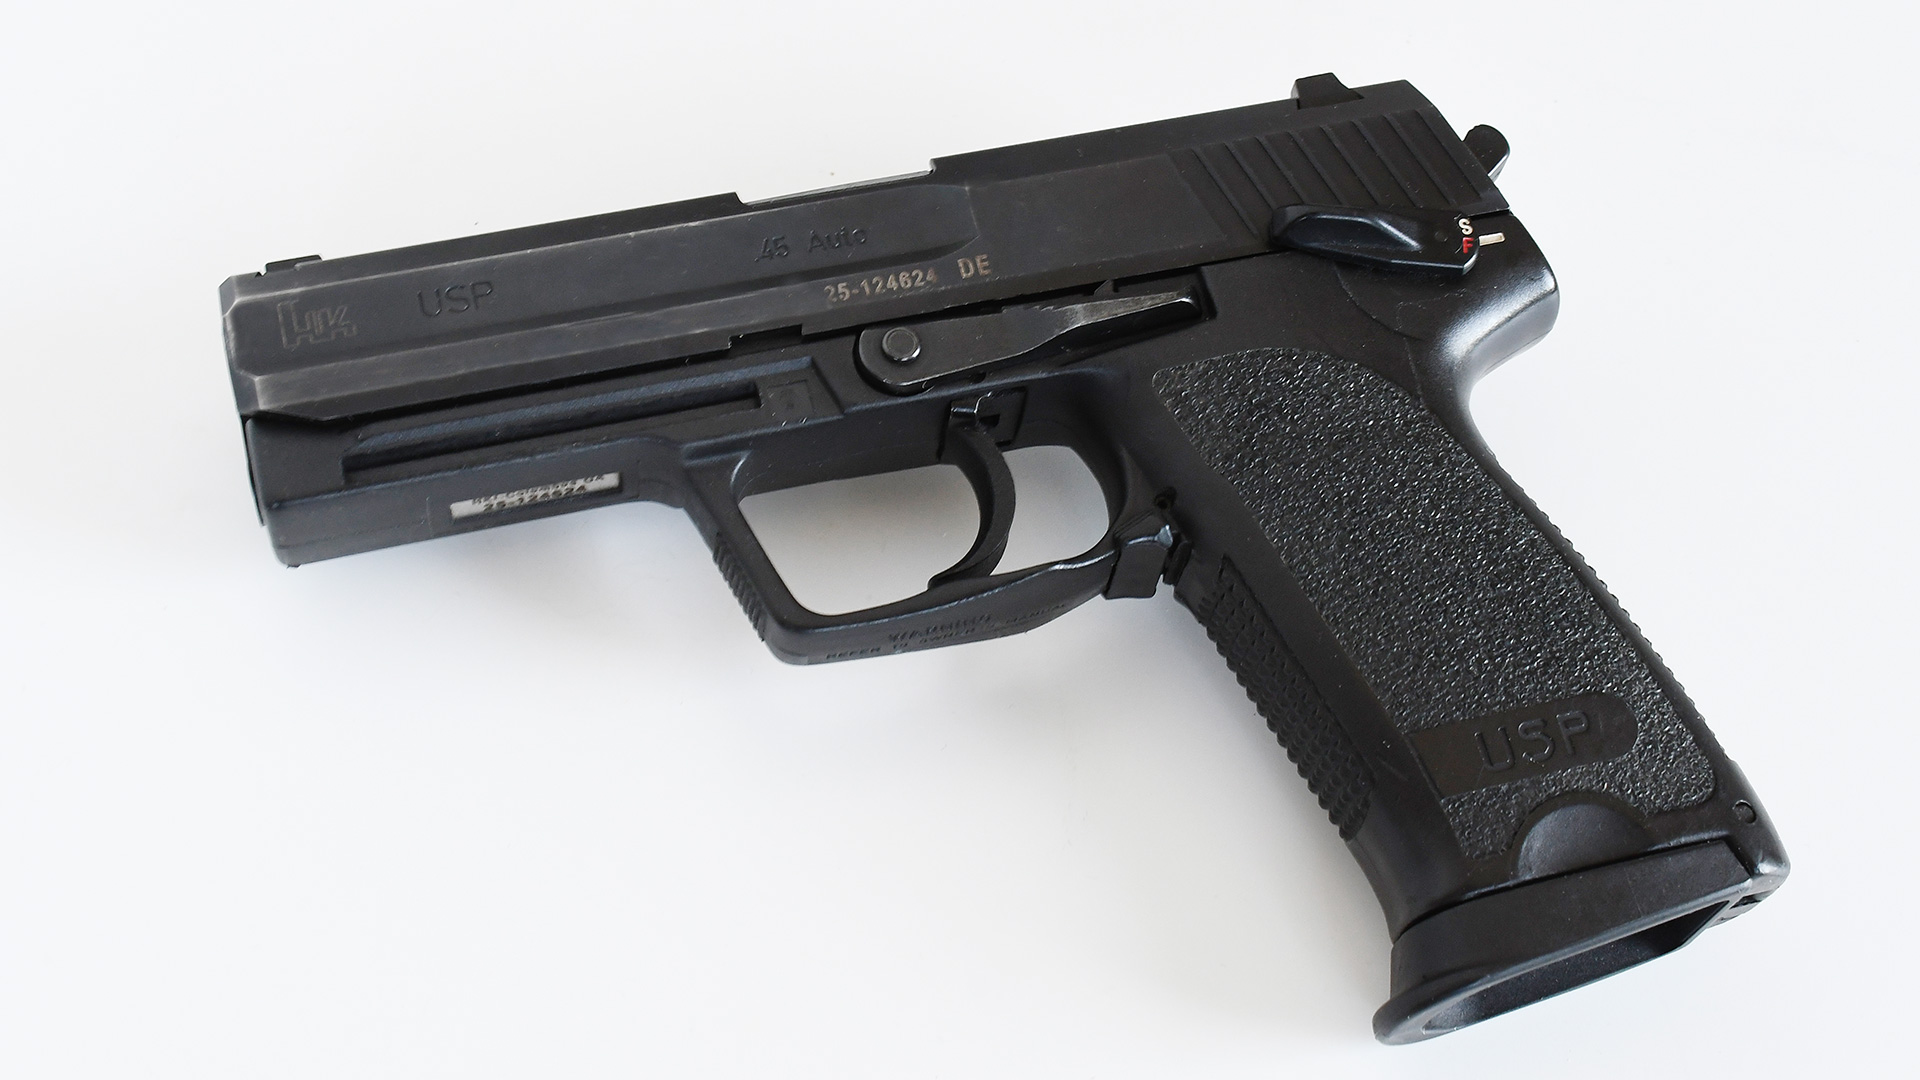 HK USP Pistols Review